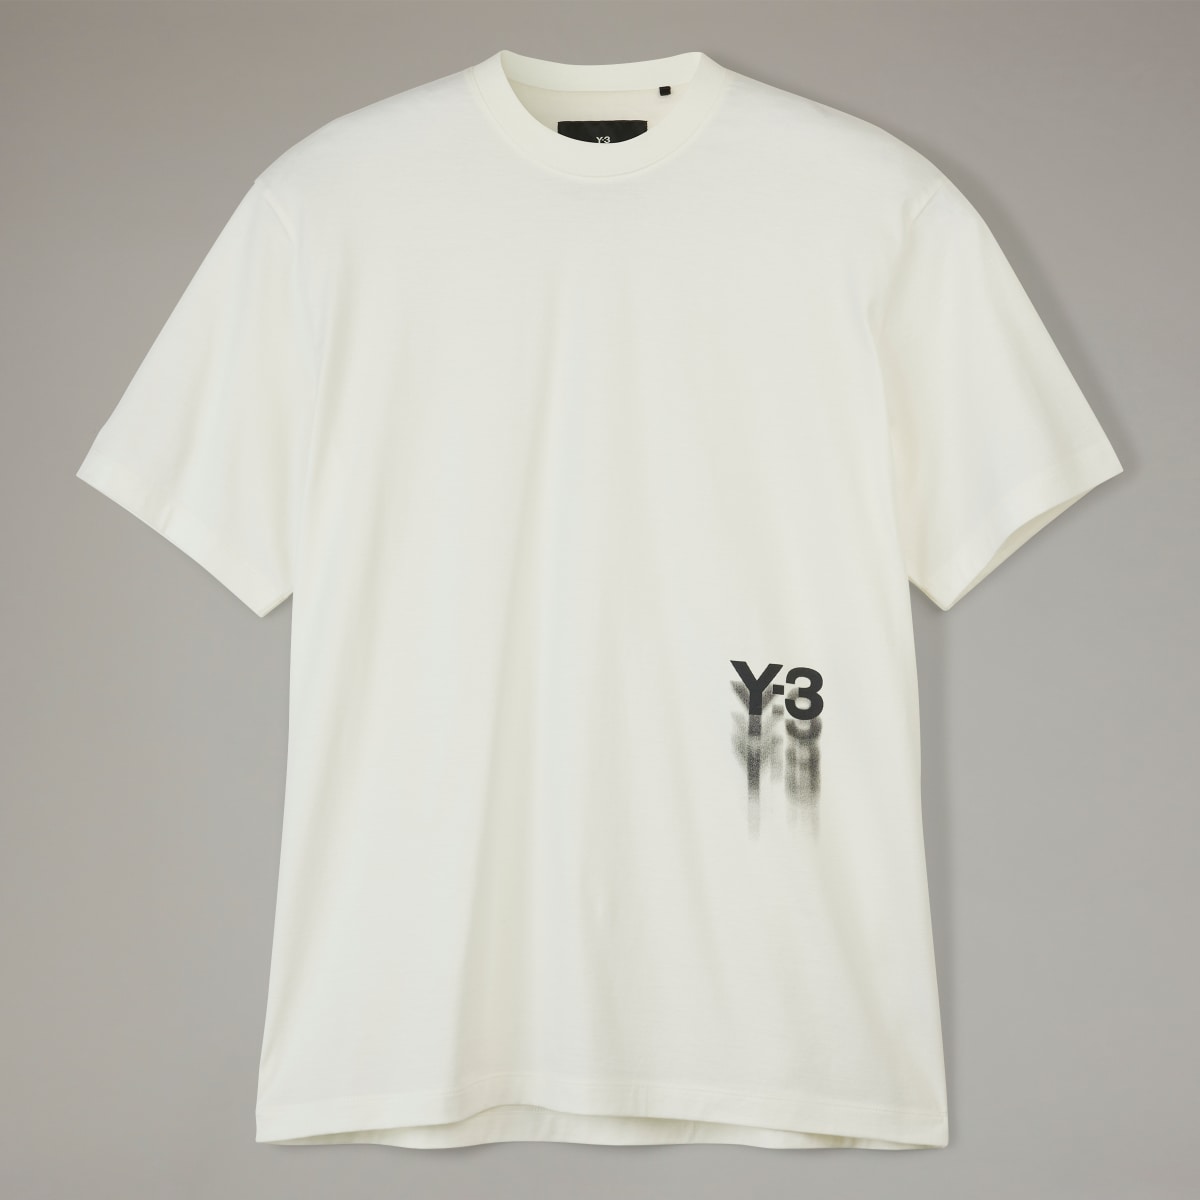 Adidas Koszulka Y-3 Graphic Short Sleeve. 5